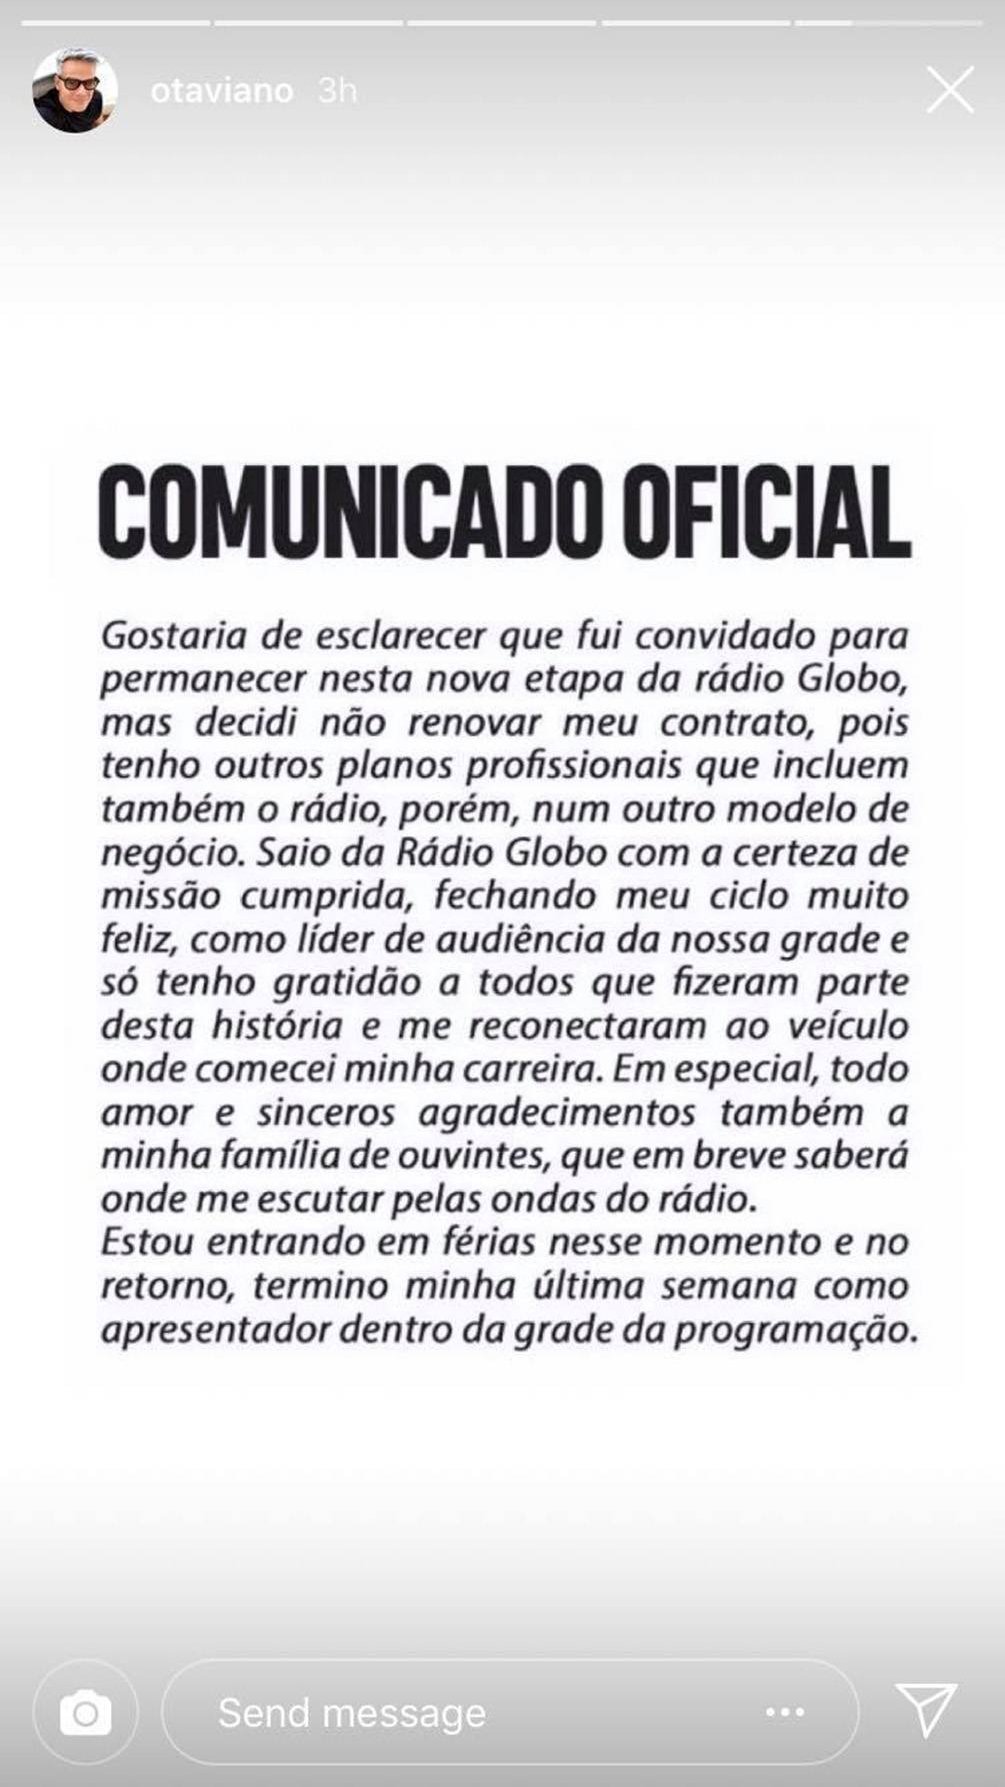 Comunicado de Otaviano Costa sobre sua saída da Rádio Globo.